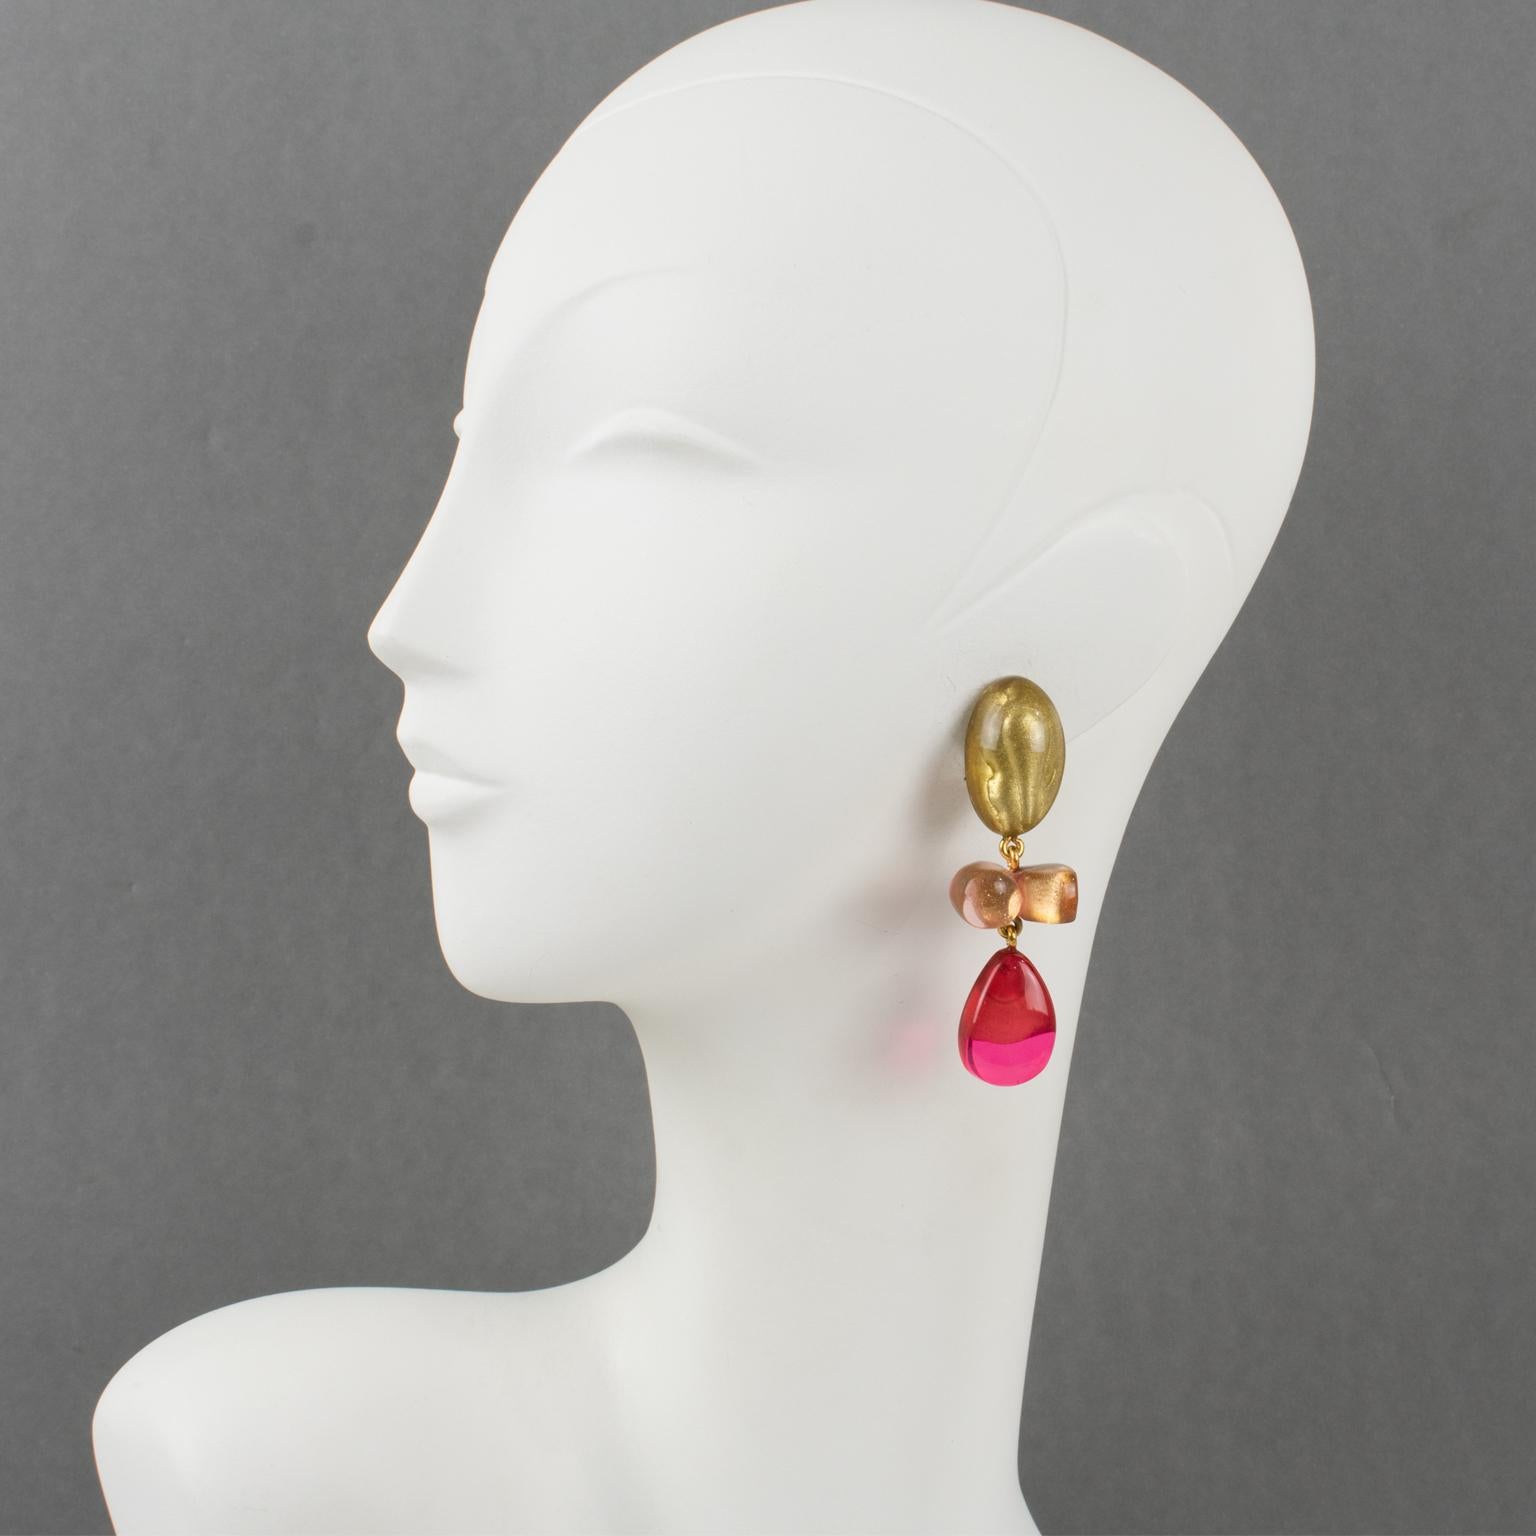 Dominique Denaive Paris hat diese bezaubernden Ohrringe zum Anstecken entworfen. Sie haben eine baumelnde Form aus Harz mit Tropfen und Freiformen in schönem Puderrosa, heißem Pink-Fuchsia und Transparent mit perlmuttartigen Goldeinschlüssen. Die